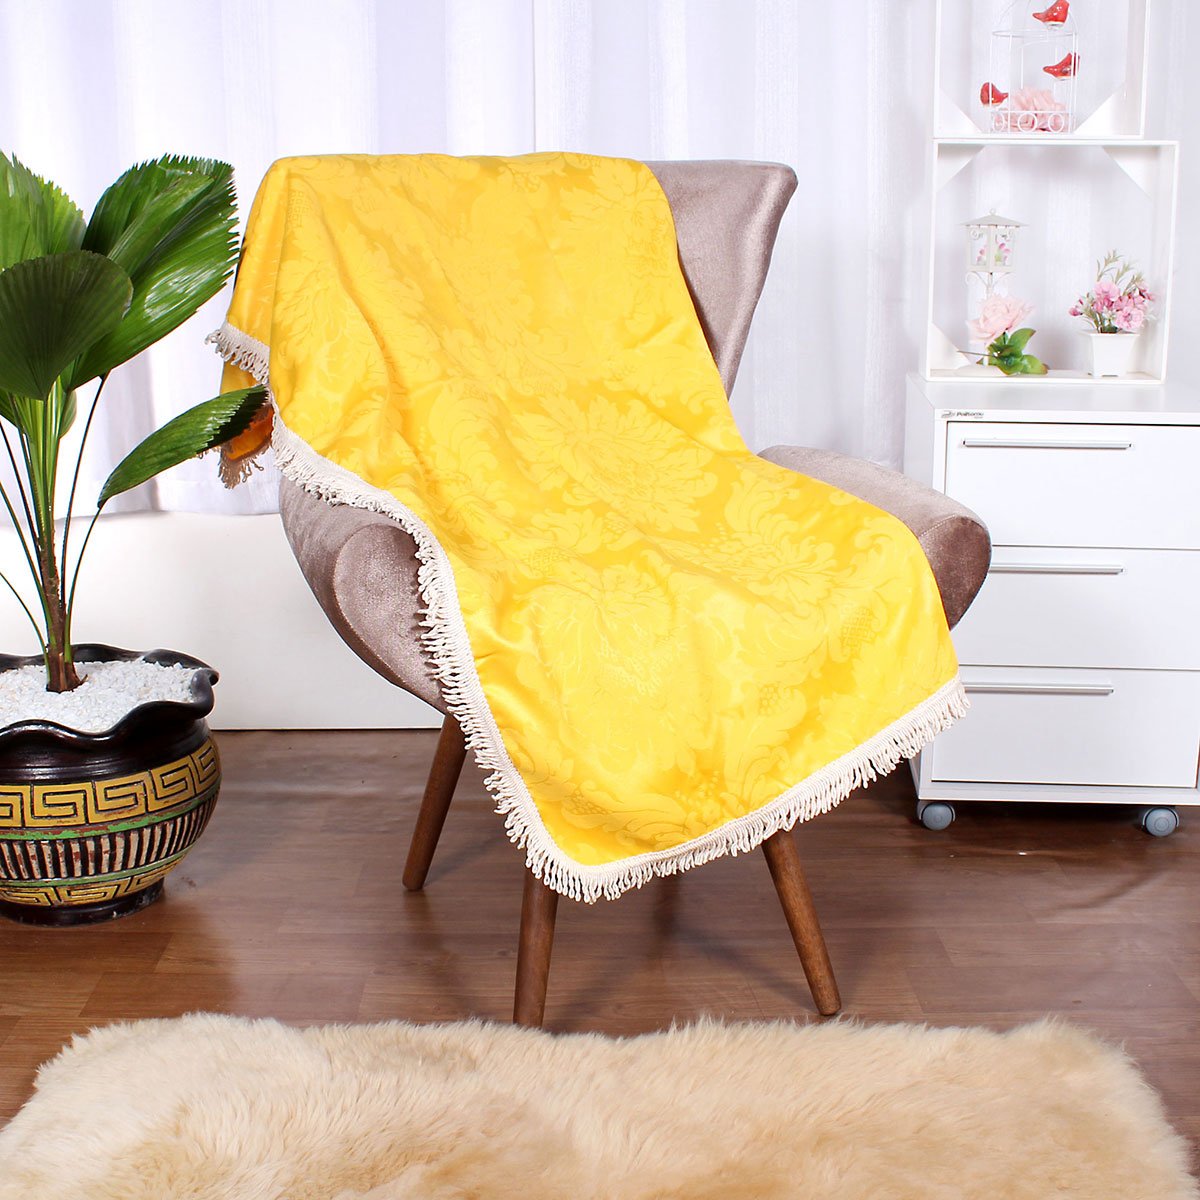 Jogo Manta Sofá Amarela Lisa 1,50m x 1,50m + 3 Almofadas Decorativas 45cm x 45cm com refil - 2